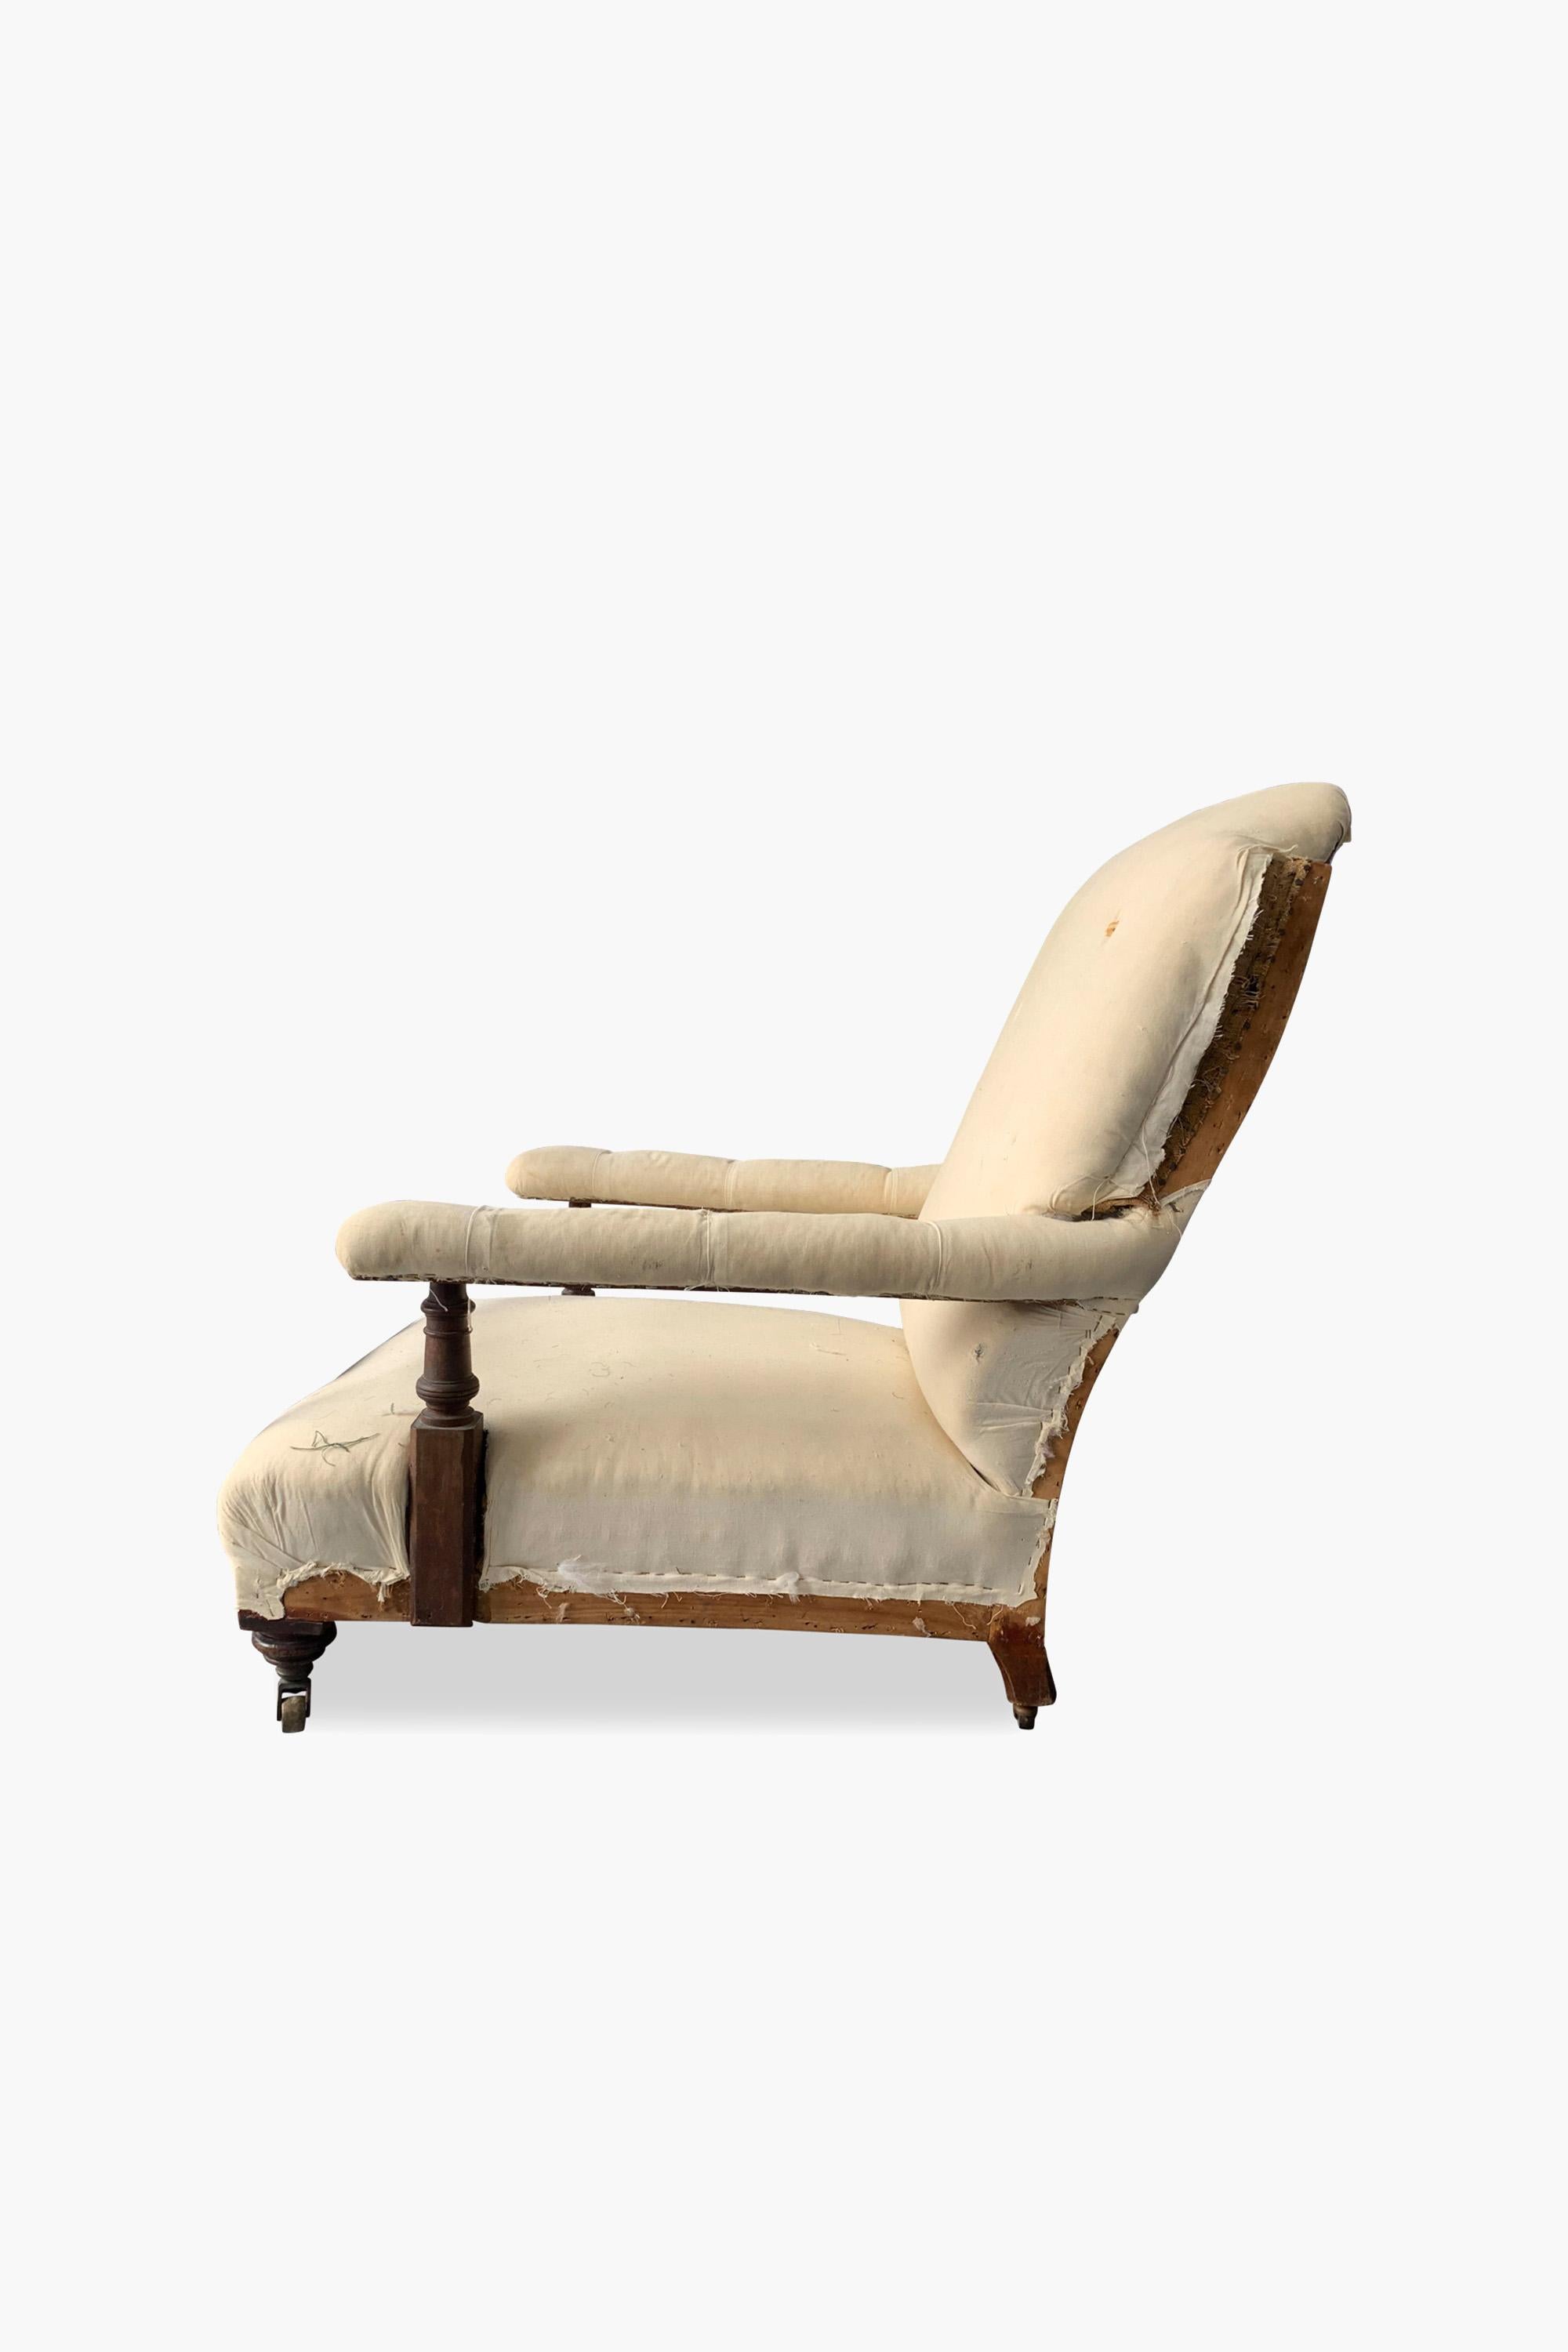 Großer offener viktorianischer Sessel von Maple & Co.

Großer gepolsterter offener viktorianischer Sessel, gestempelt 'Maple & Co'.

Bis auf die Originalpolsterung abgenommen. Eine vollständige Neupolsterung kann nach Absprache vorgenommen